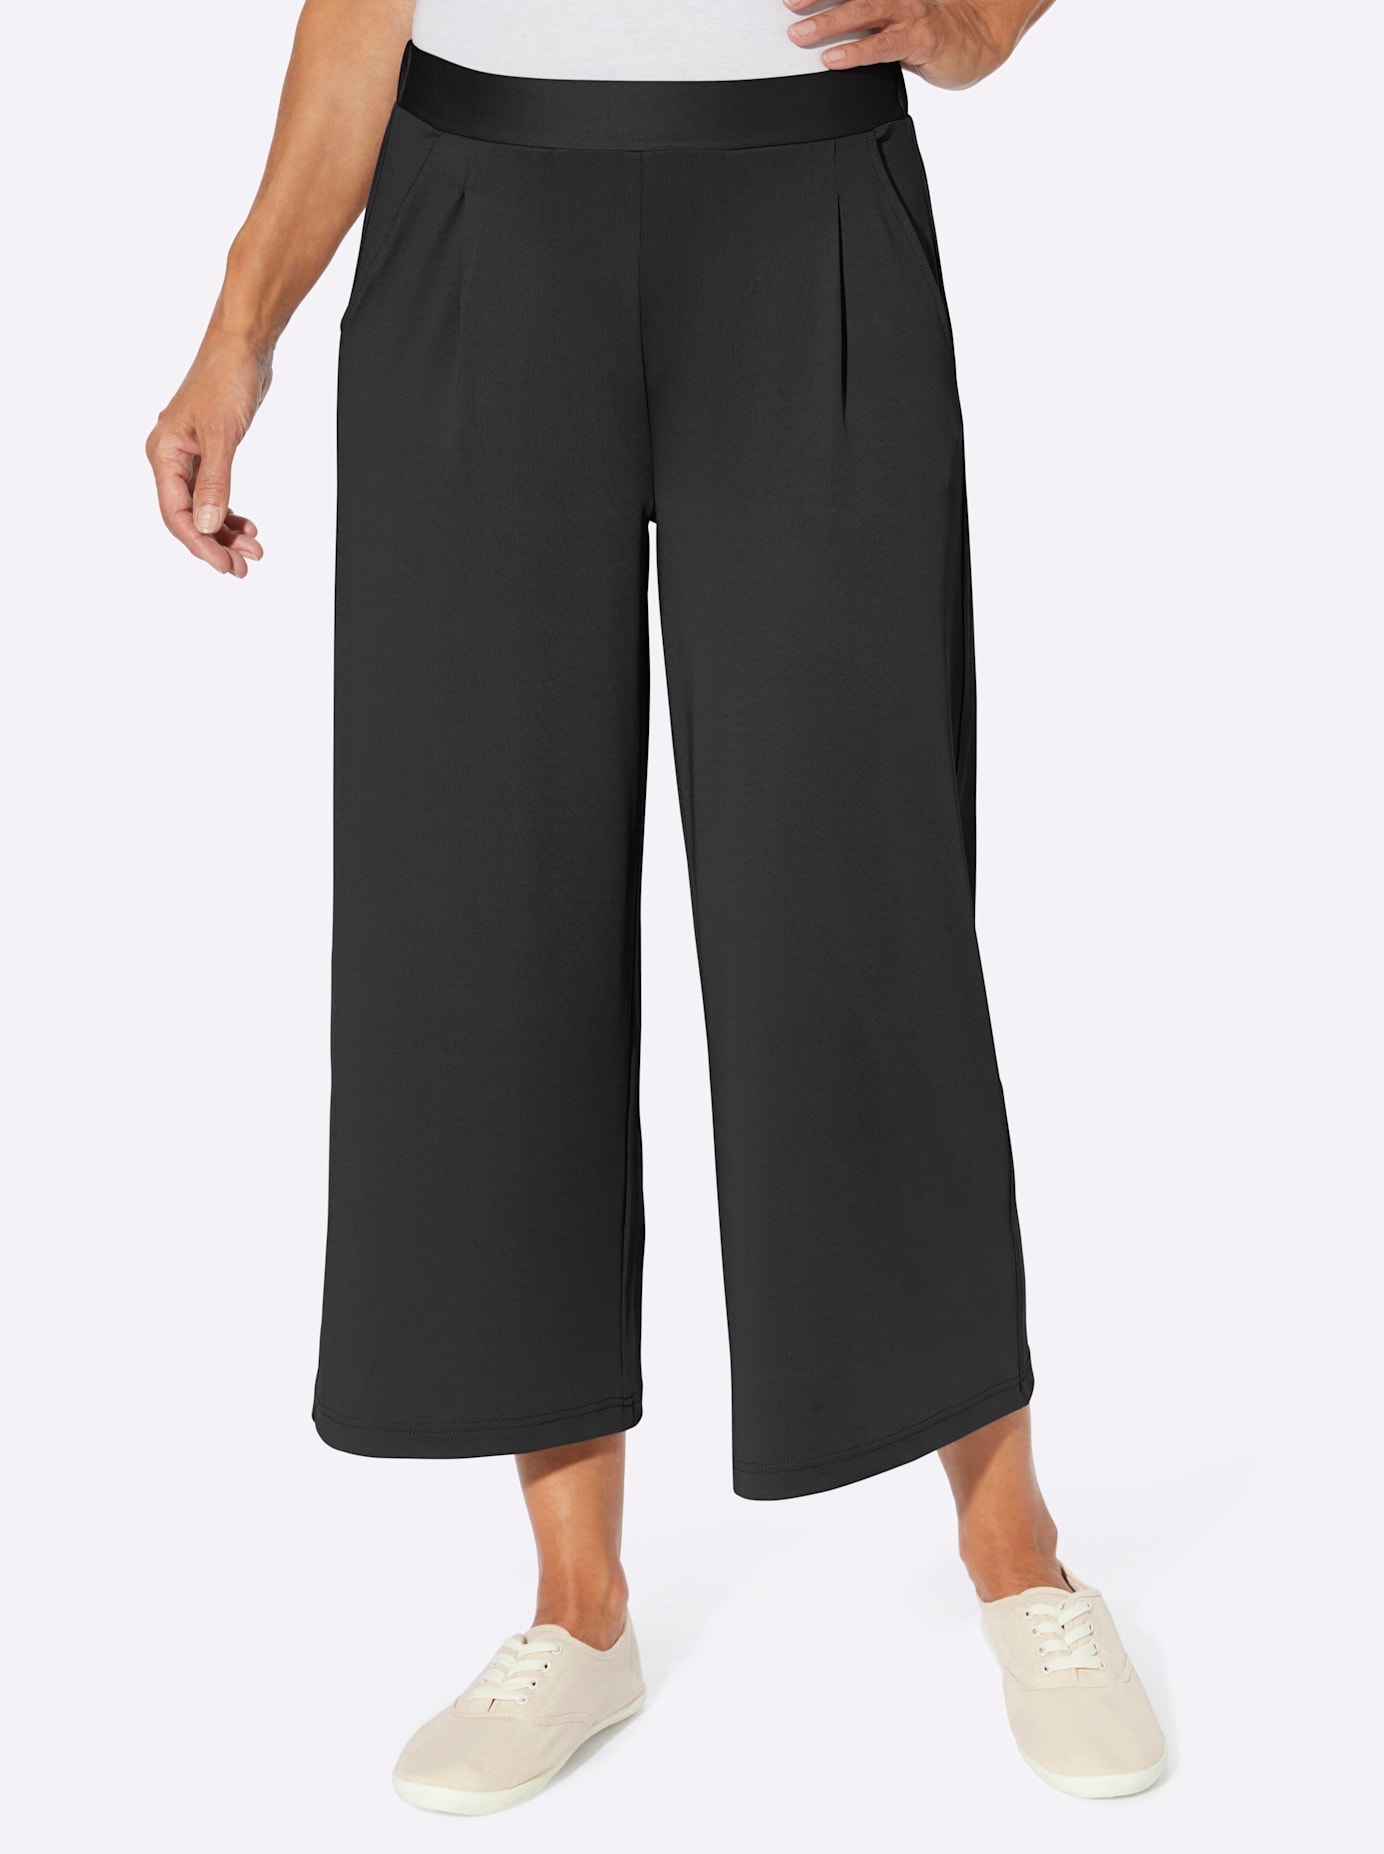 Culottes & Hosenröcke schwarz für Damen | BAUR online kaufen